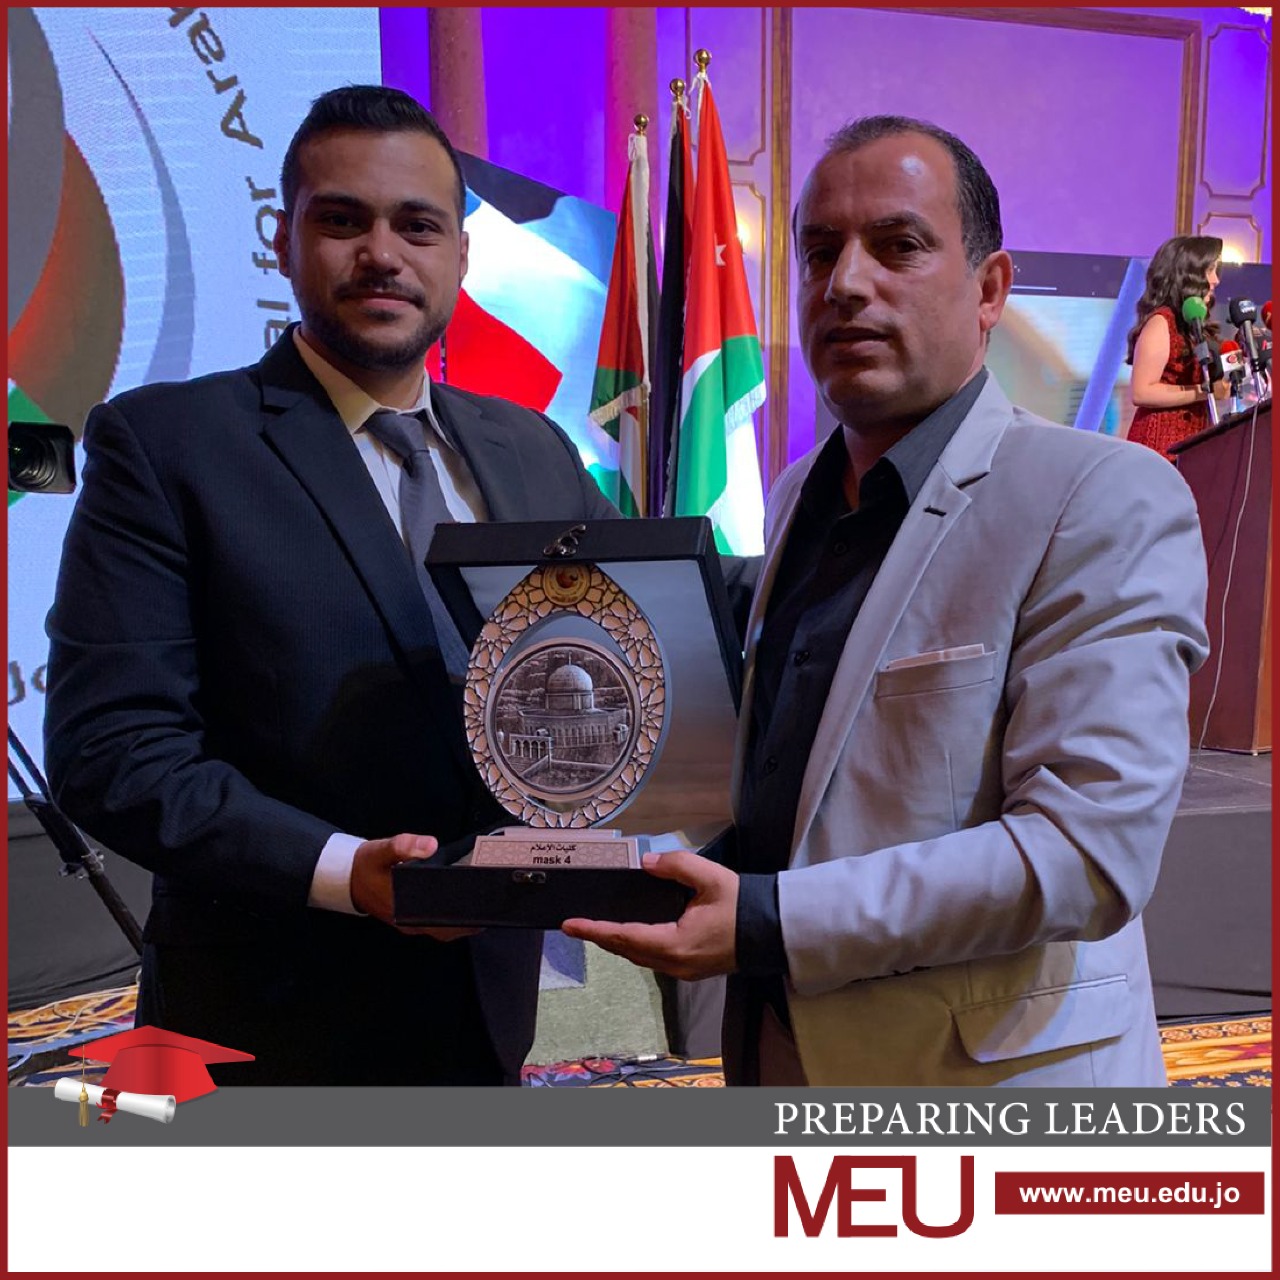 كلية الإعلام تحصد المركز الثاني في مهرجان الأردن للإعلام العربي/ الرابع